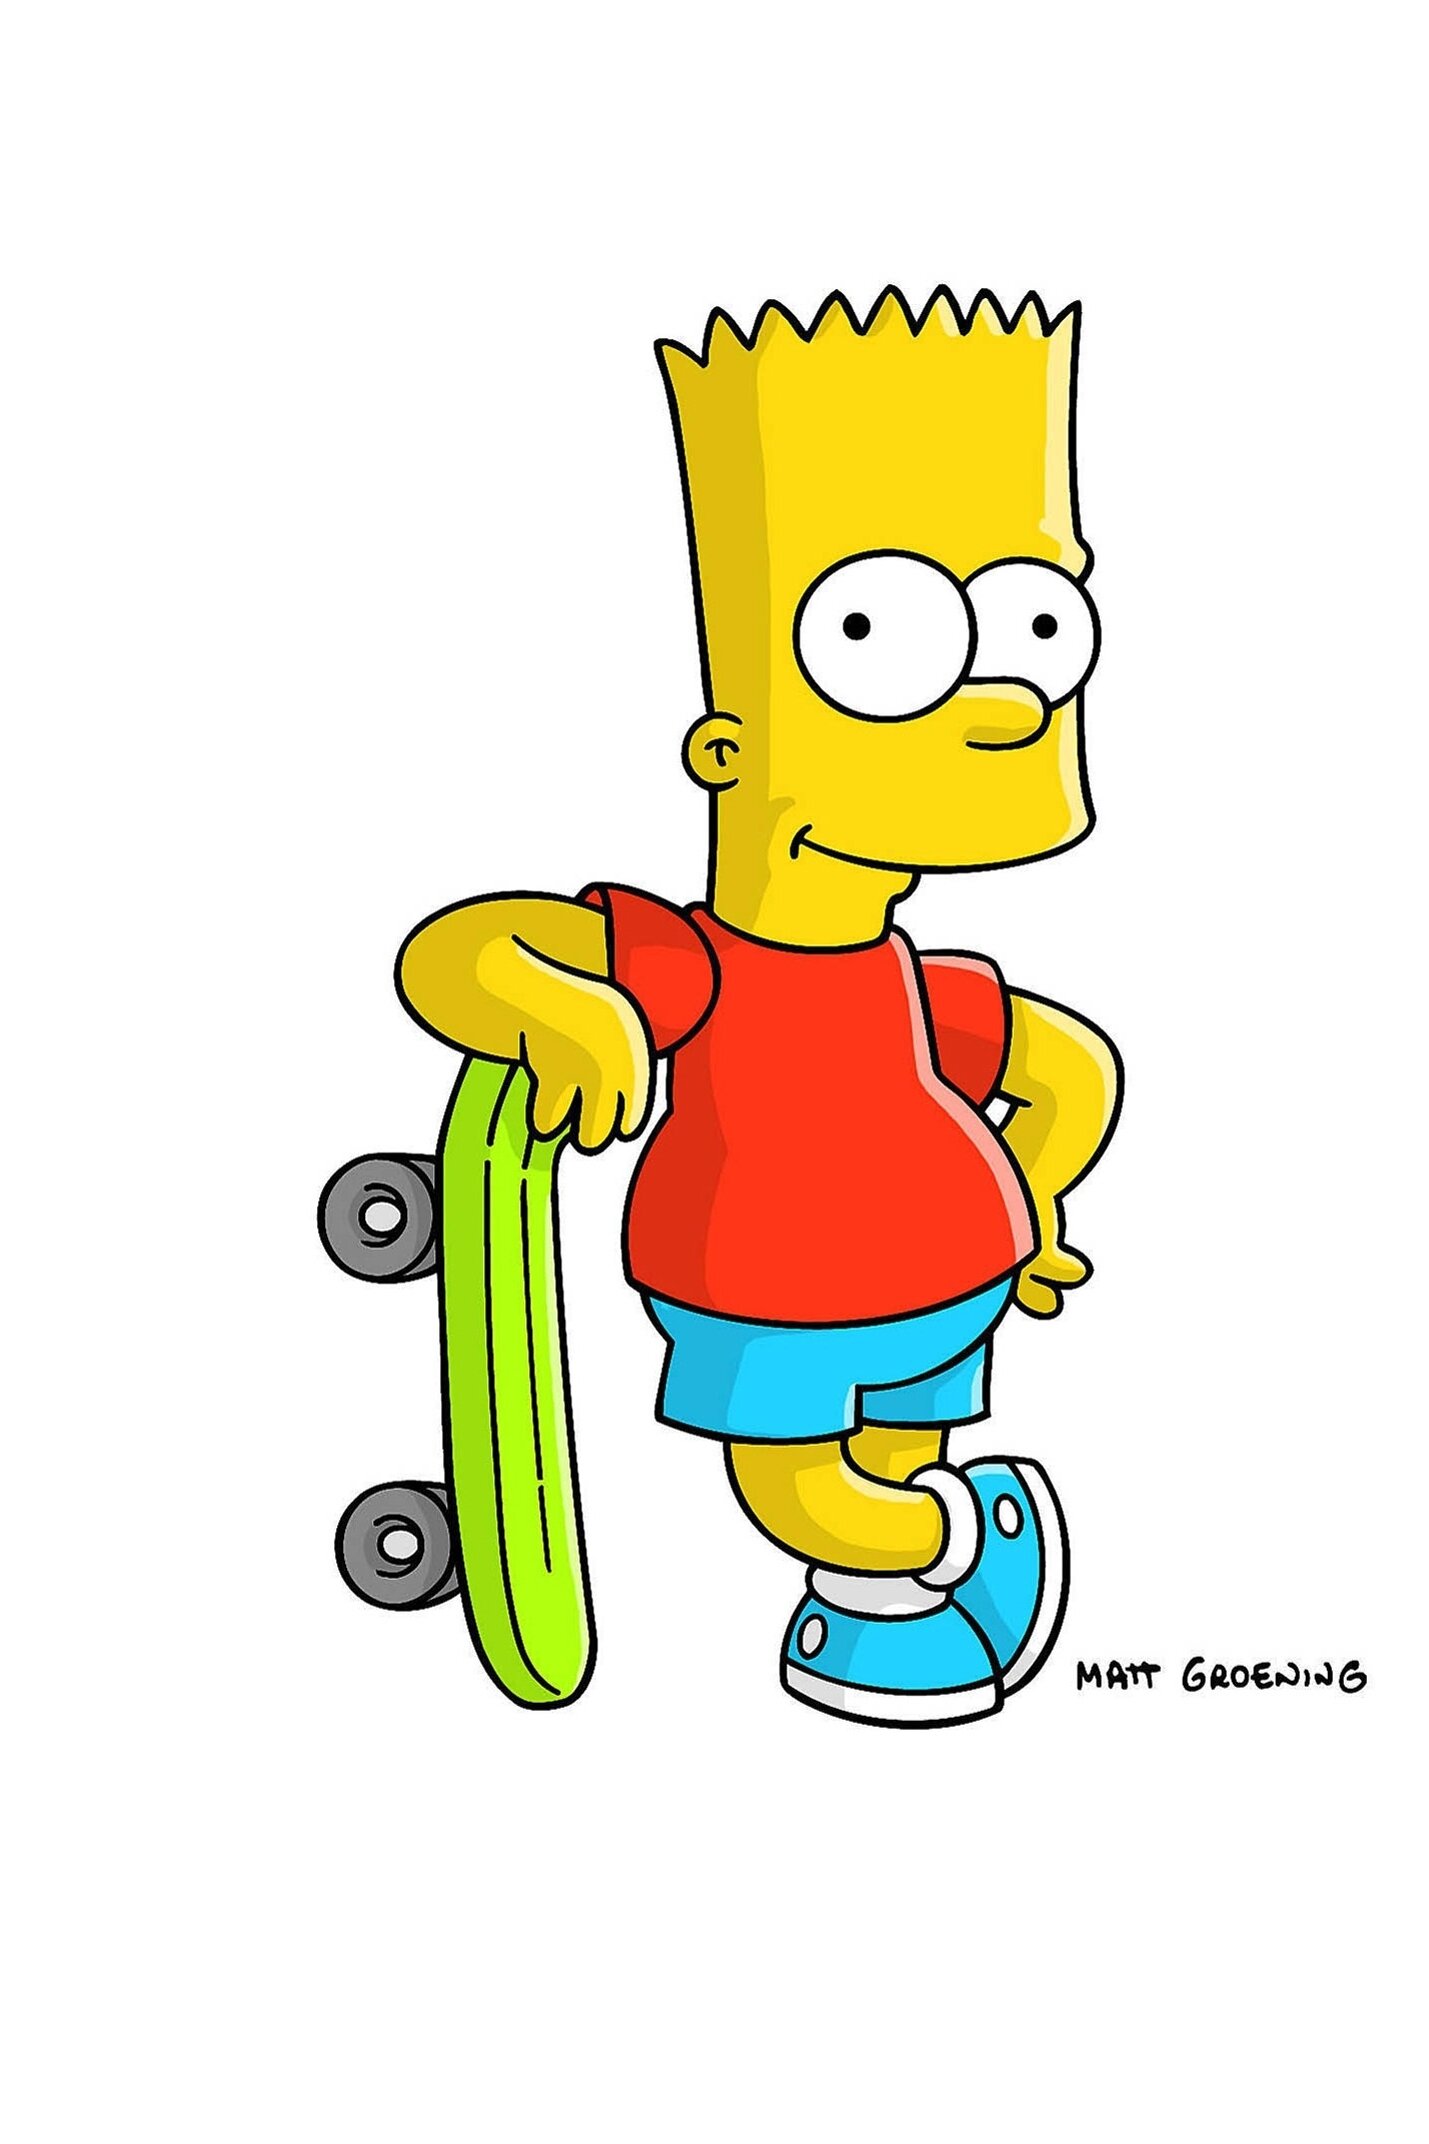 Les Simpson - Le gros petit ami de Lisa